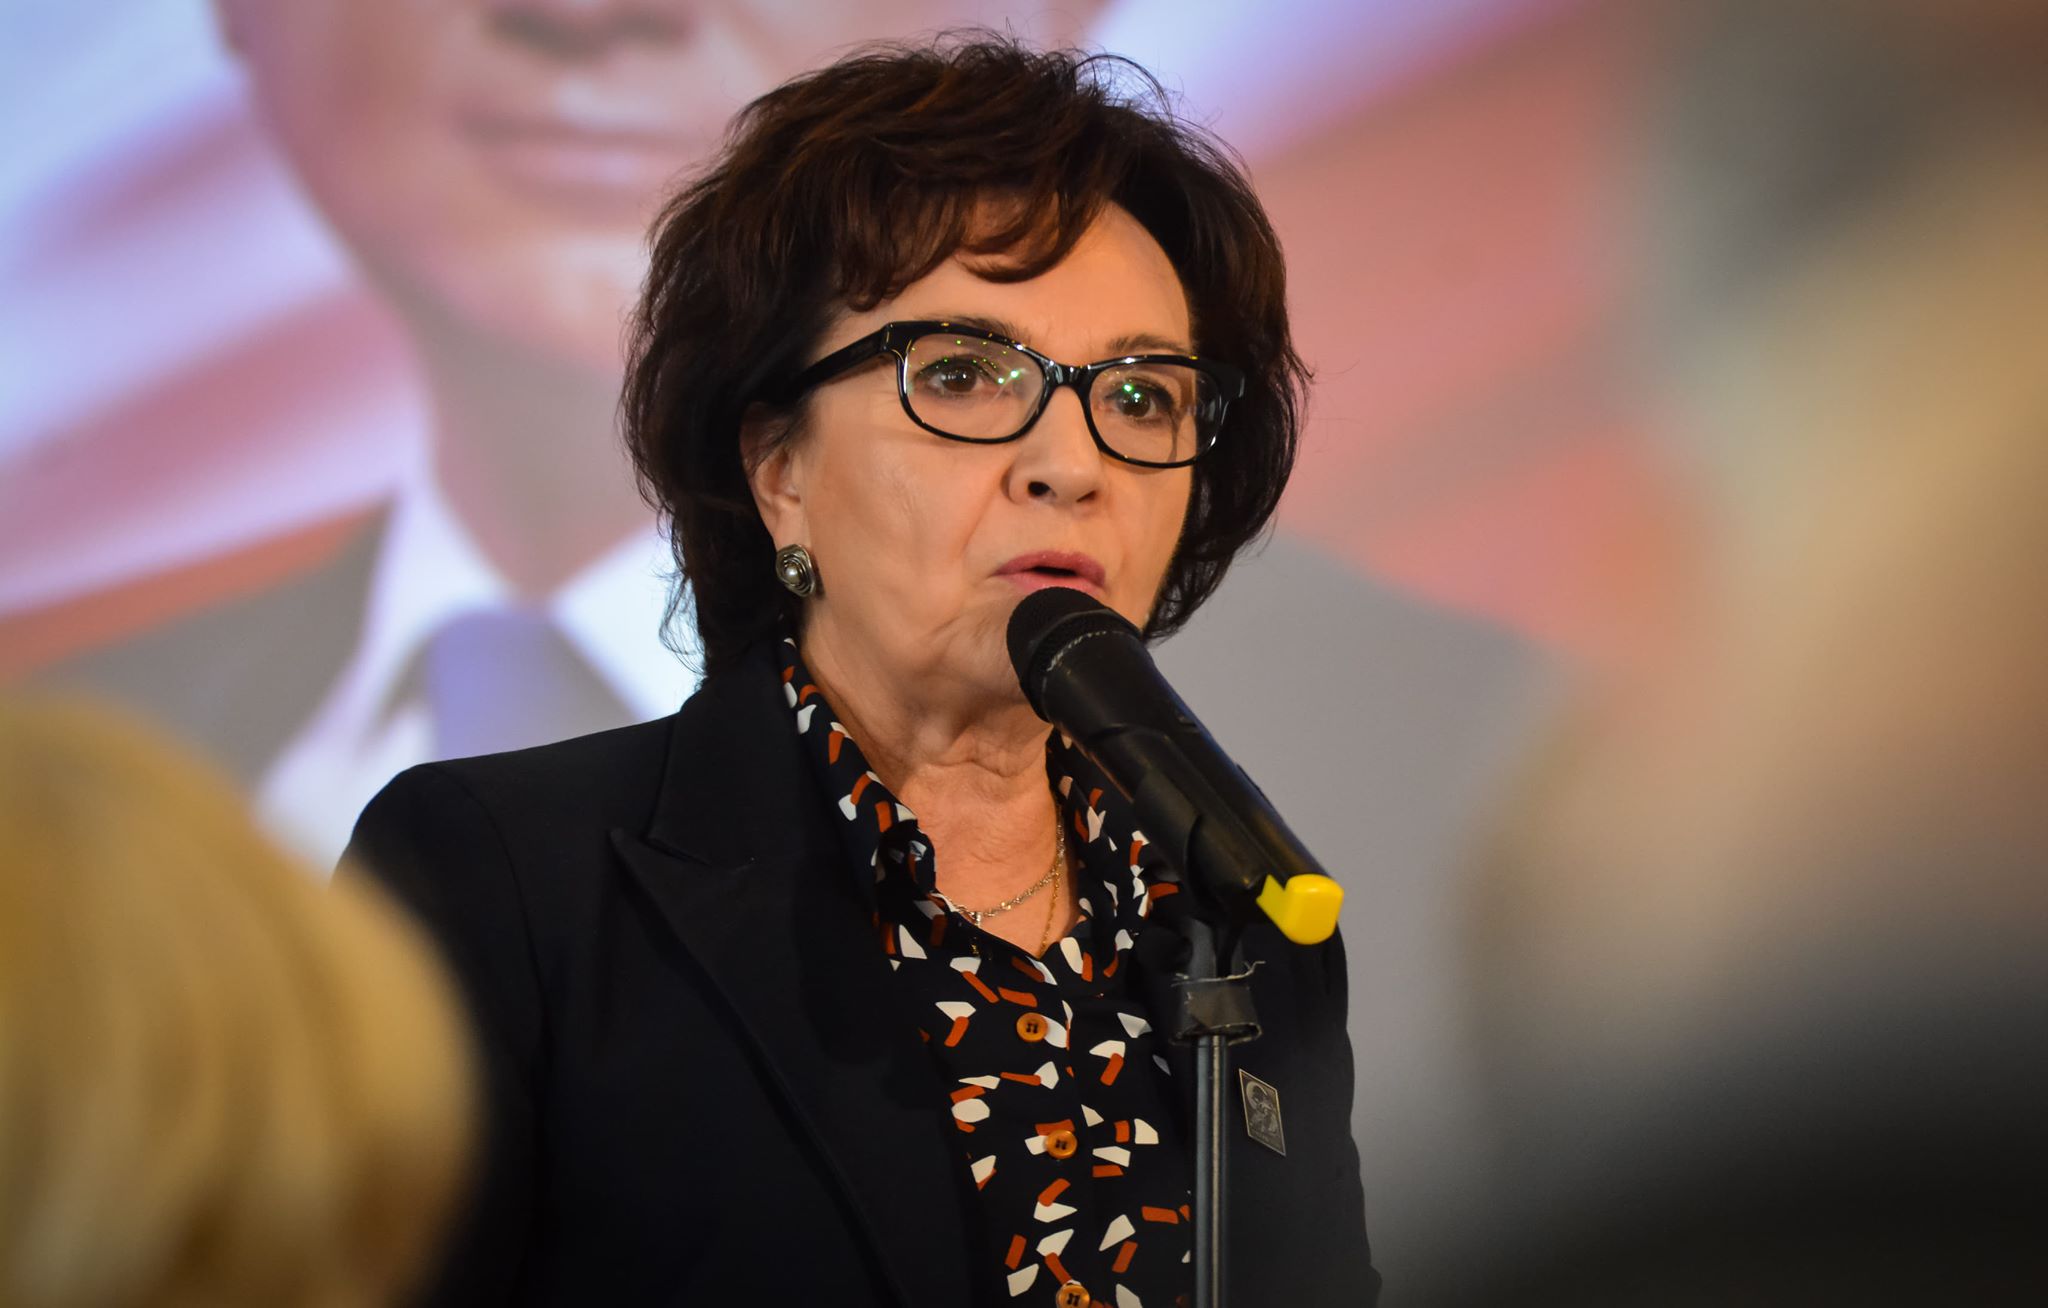 Marszałek Elżbieta Witek na Podkarpaciu: Mówiła o ideologii gender i ochronie rodziny [VIDEO] - Zdjęcie główne